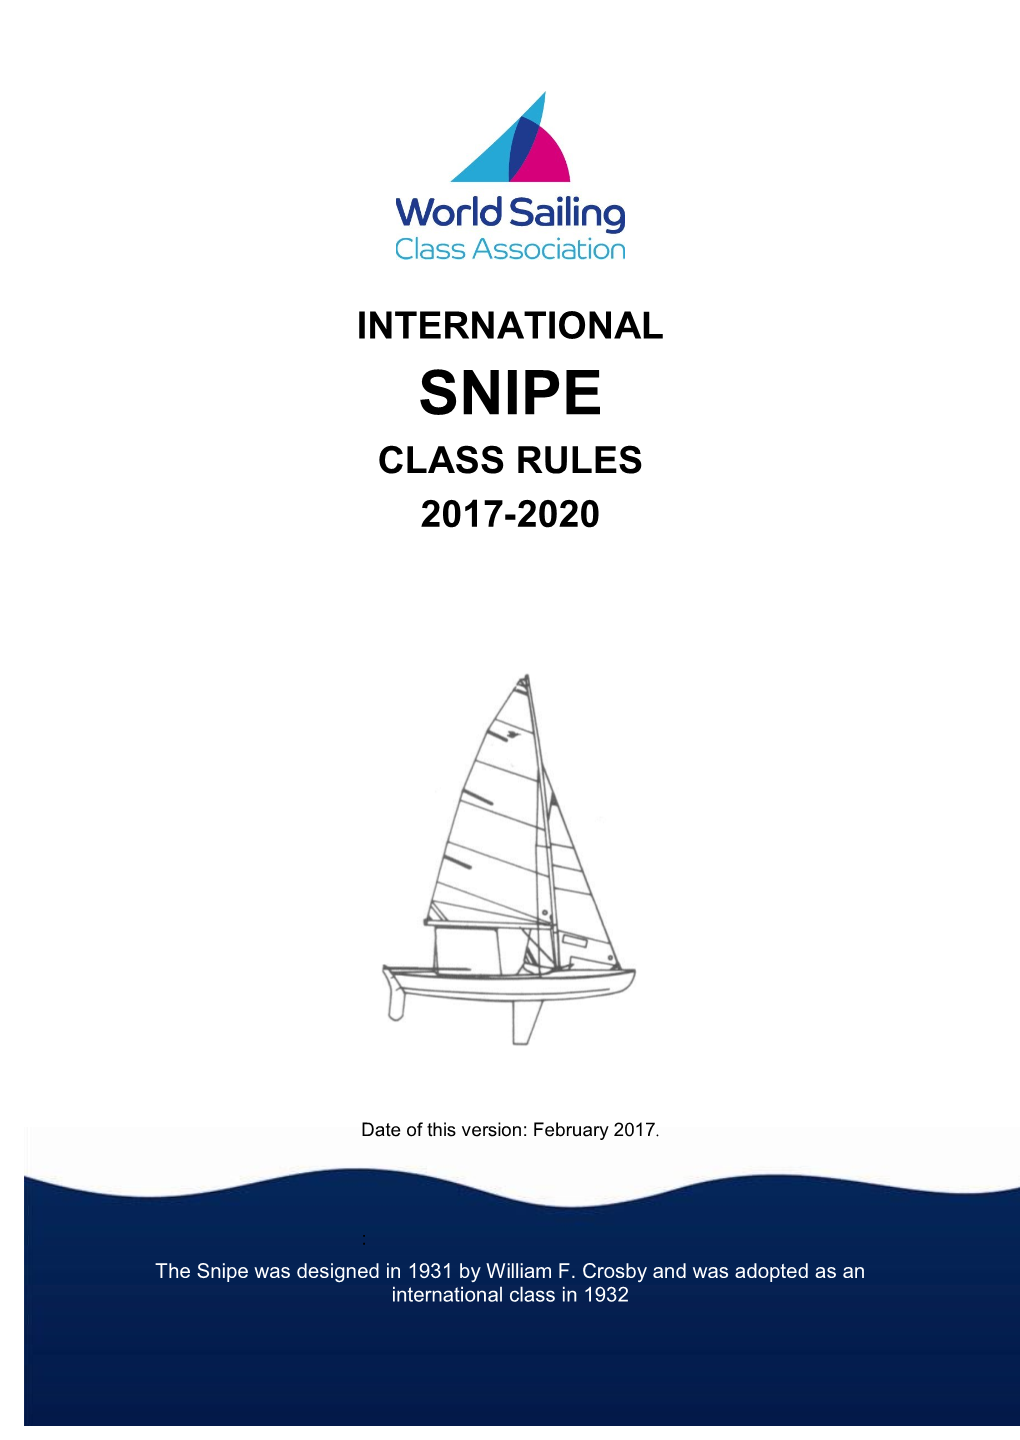 International Class Rules 2017-2020